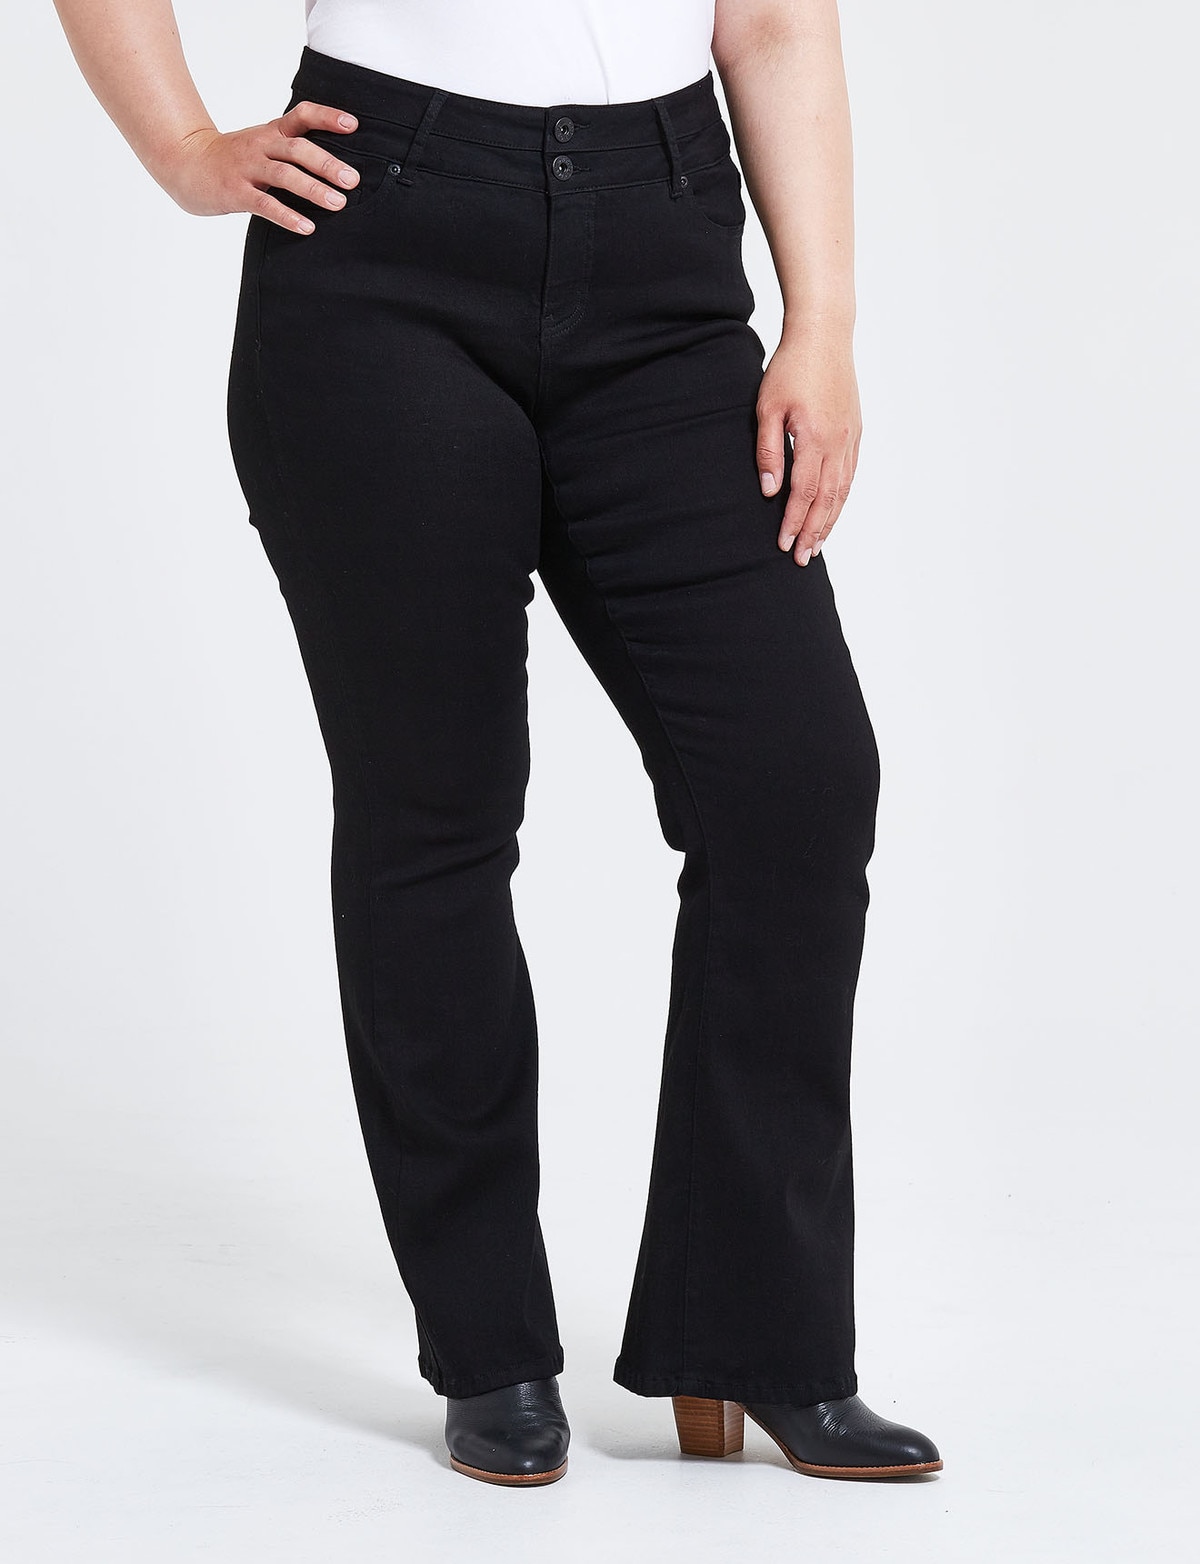 Denim Republic Curve Jean, Jet Black - Jeans, Pants &